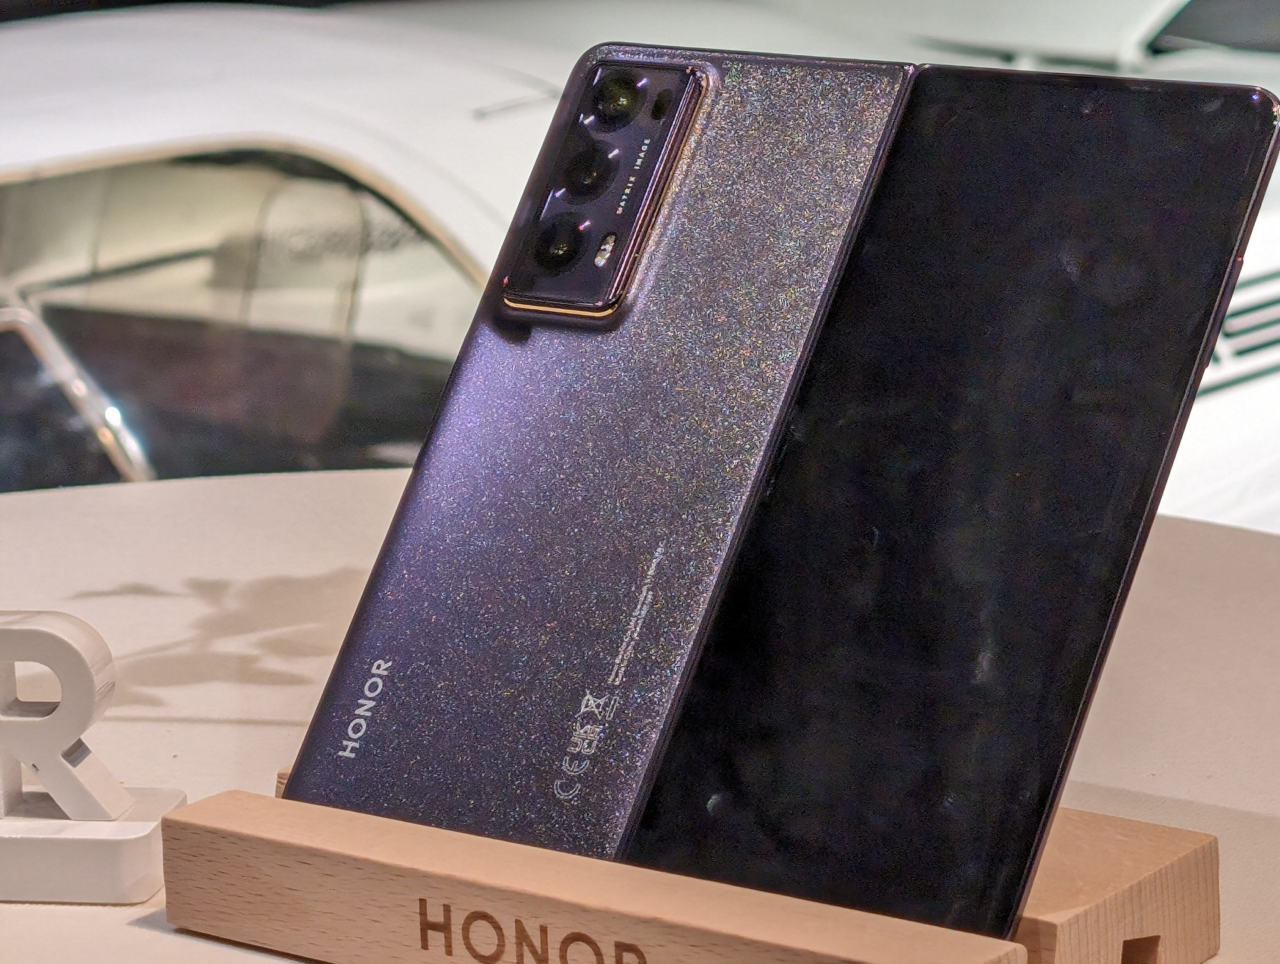 Dwa smartfony marki Honor odbijające światło, z tylnymi aparatami fotograficznymi, wystawione na drewnianym stojaku z logotypem marki.